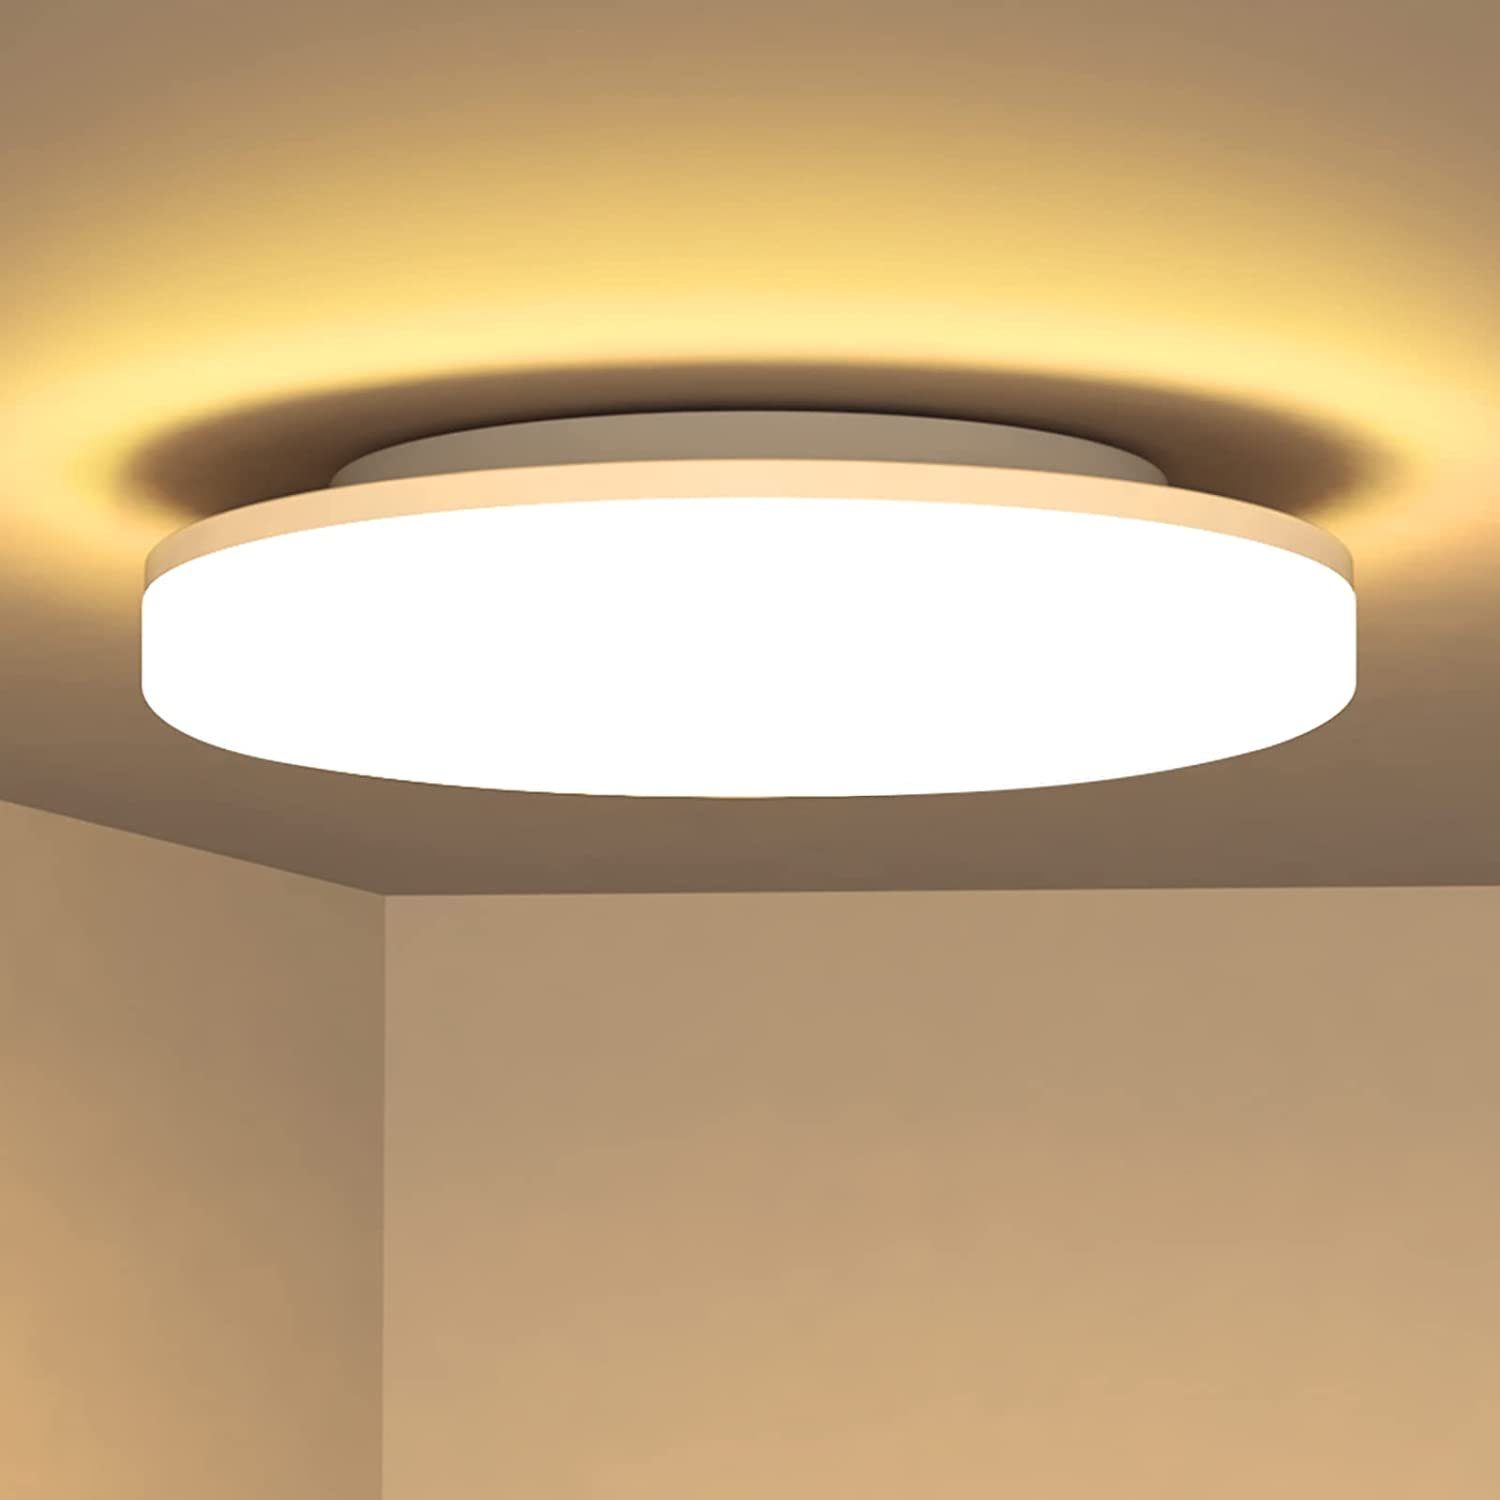 JOEAIS LED Deckenleuchte Deckenlampe Led Deckenleuchte Flach Lampen Ceiling Light Küchenlampe, Deckenbeleuchtung 2700K Warmweiss 24W 2200LM für Bad Flur Keller